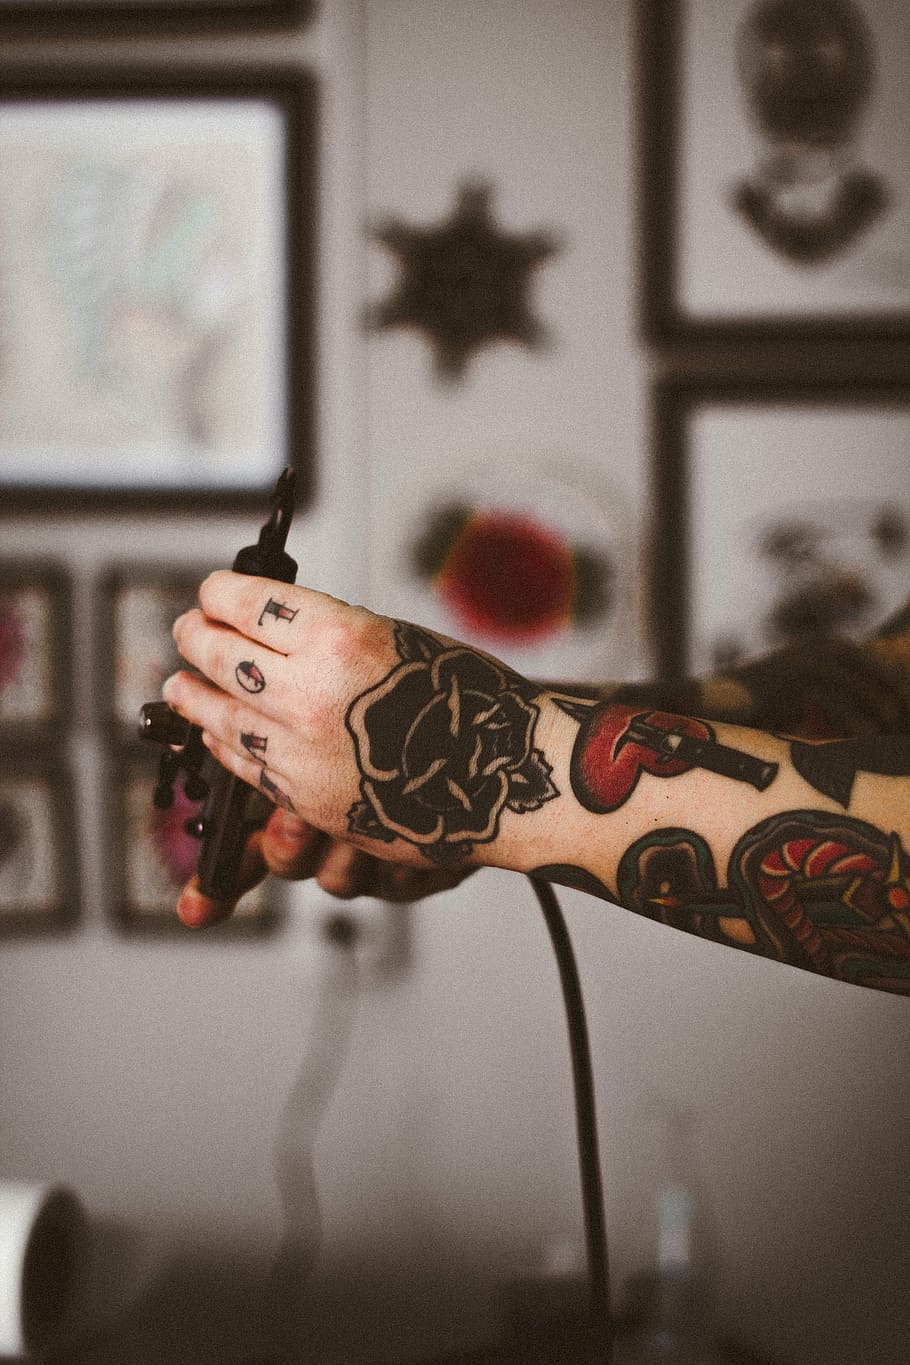 selectivo, fotografía de enfoque, persona, mano, negro, tinta, tatuajes, brazo, cuerpo, tatuaje